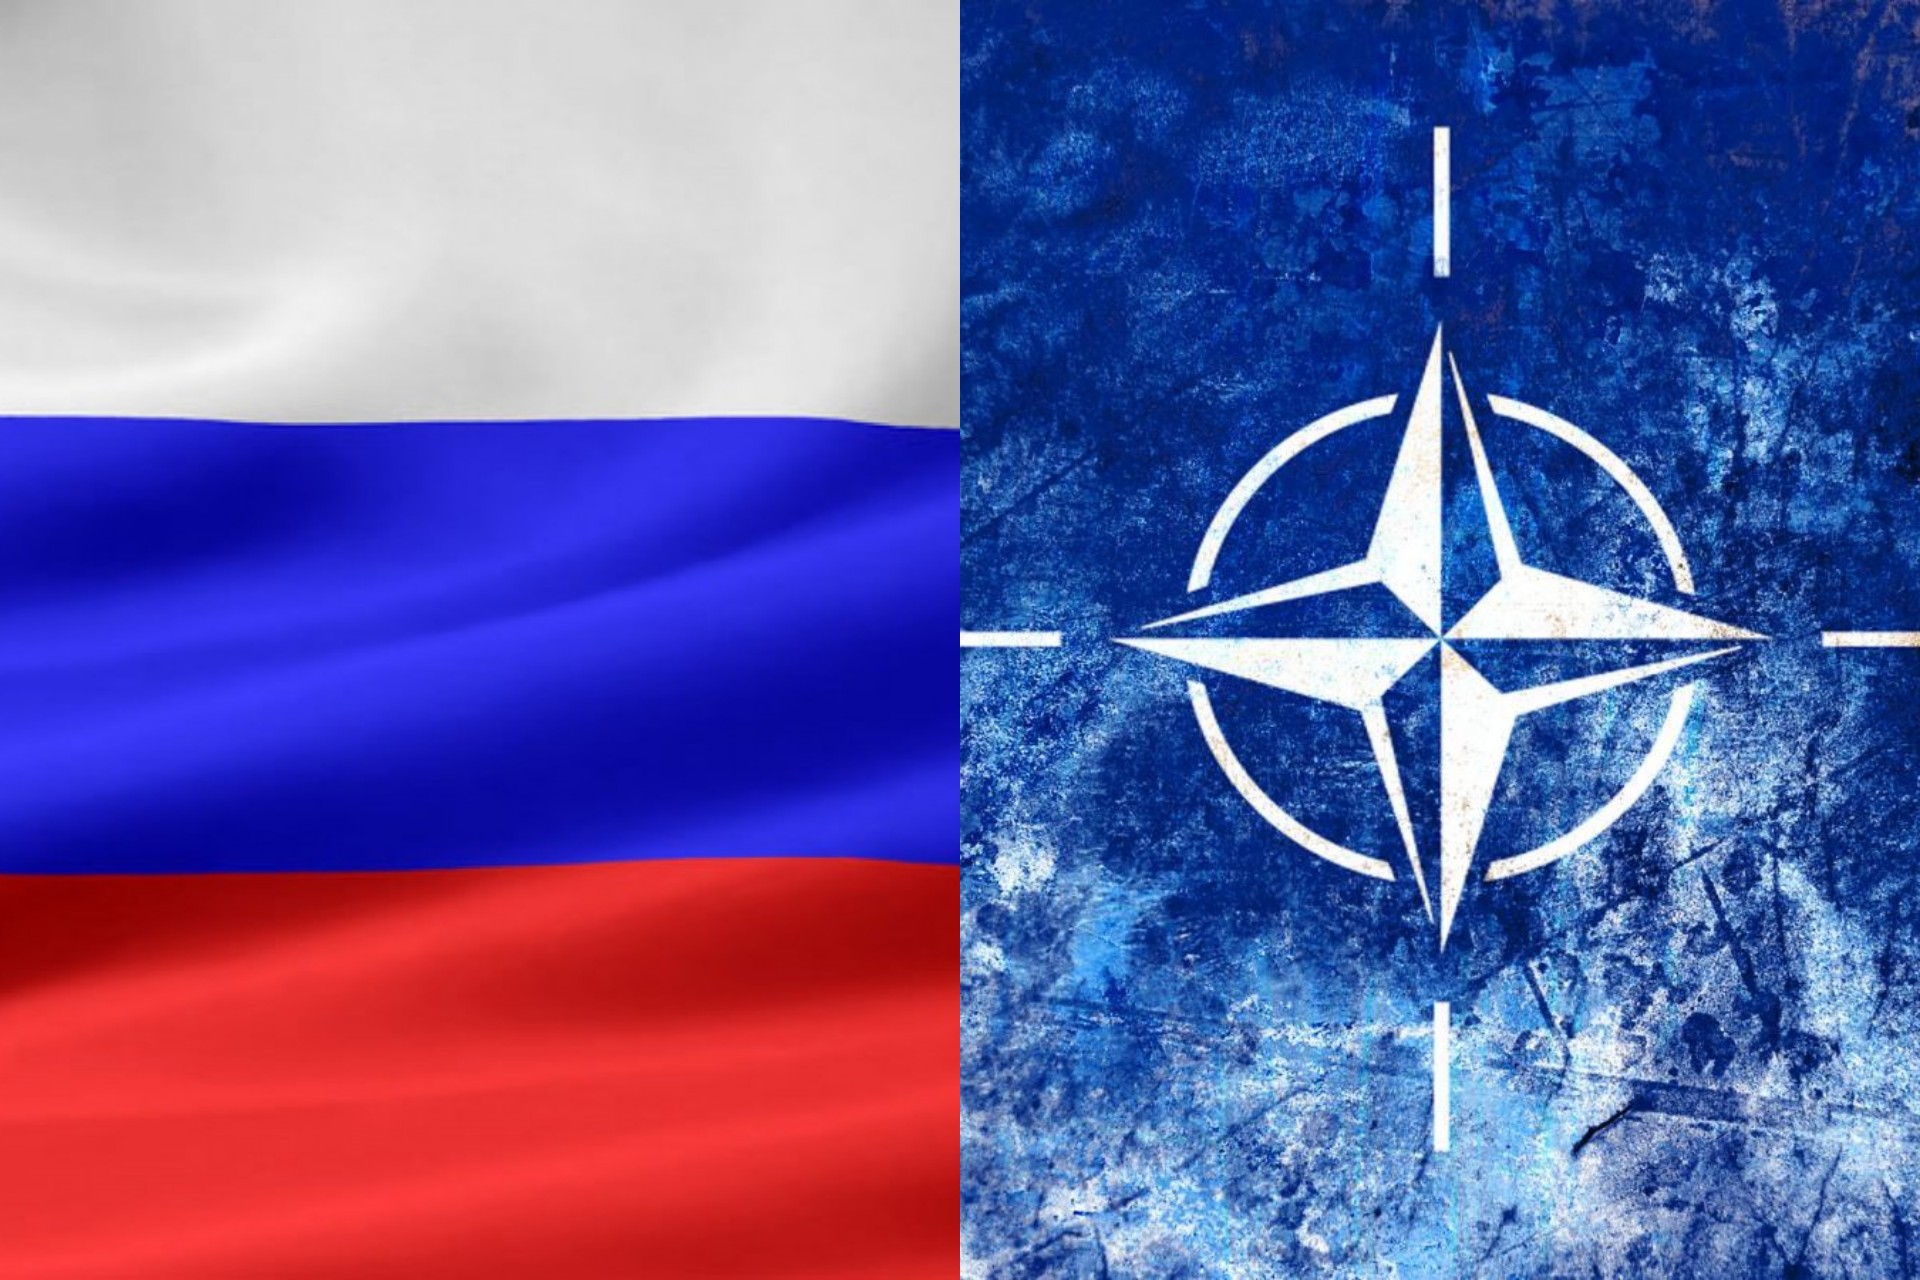 Нато тв. Флаг НАТО И РФ. Украина РФ НАТО флаг. НАТО против РФ. Противостояние России и НАТО.